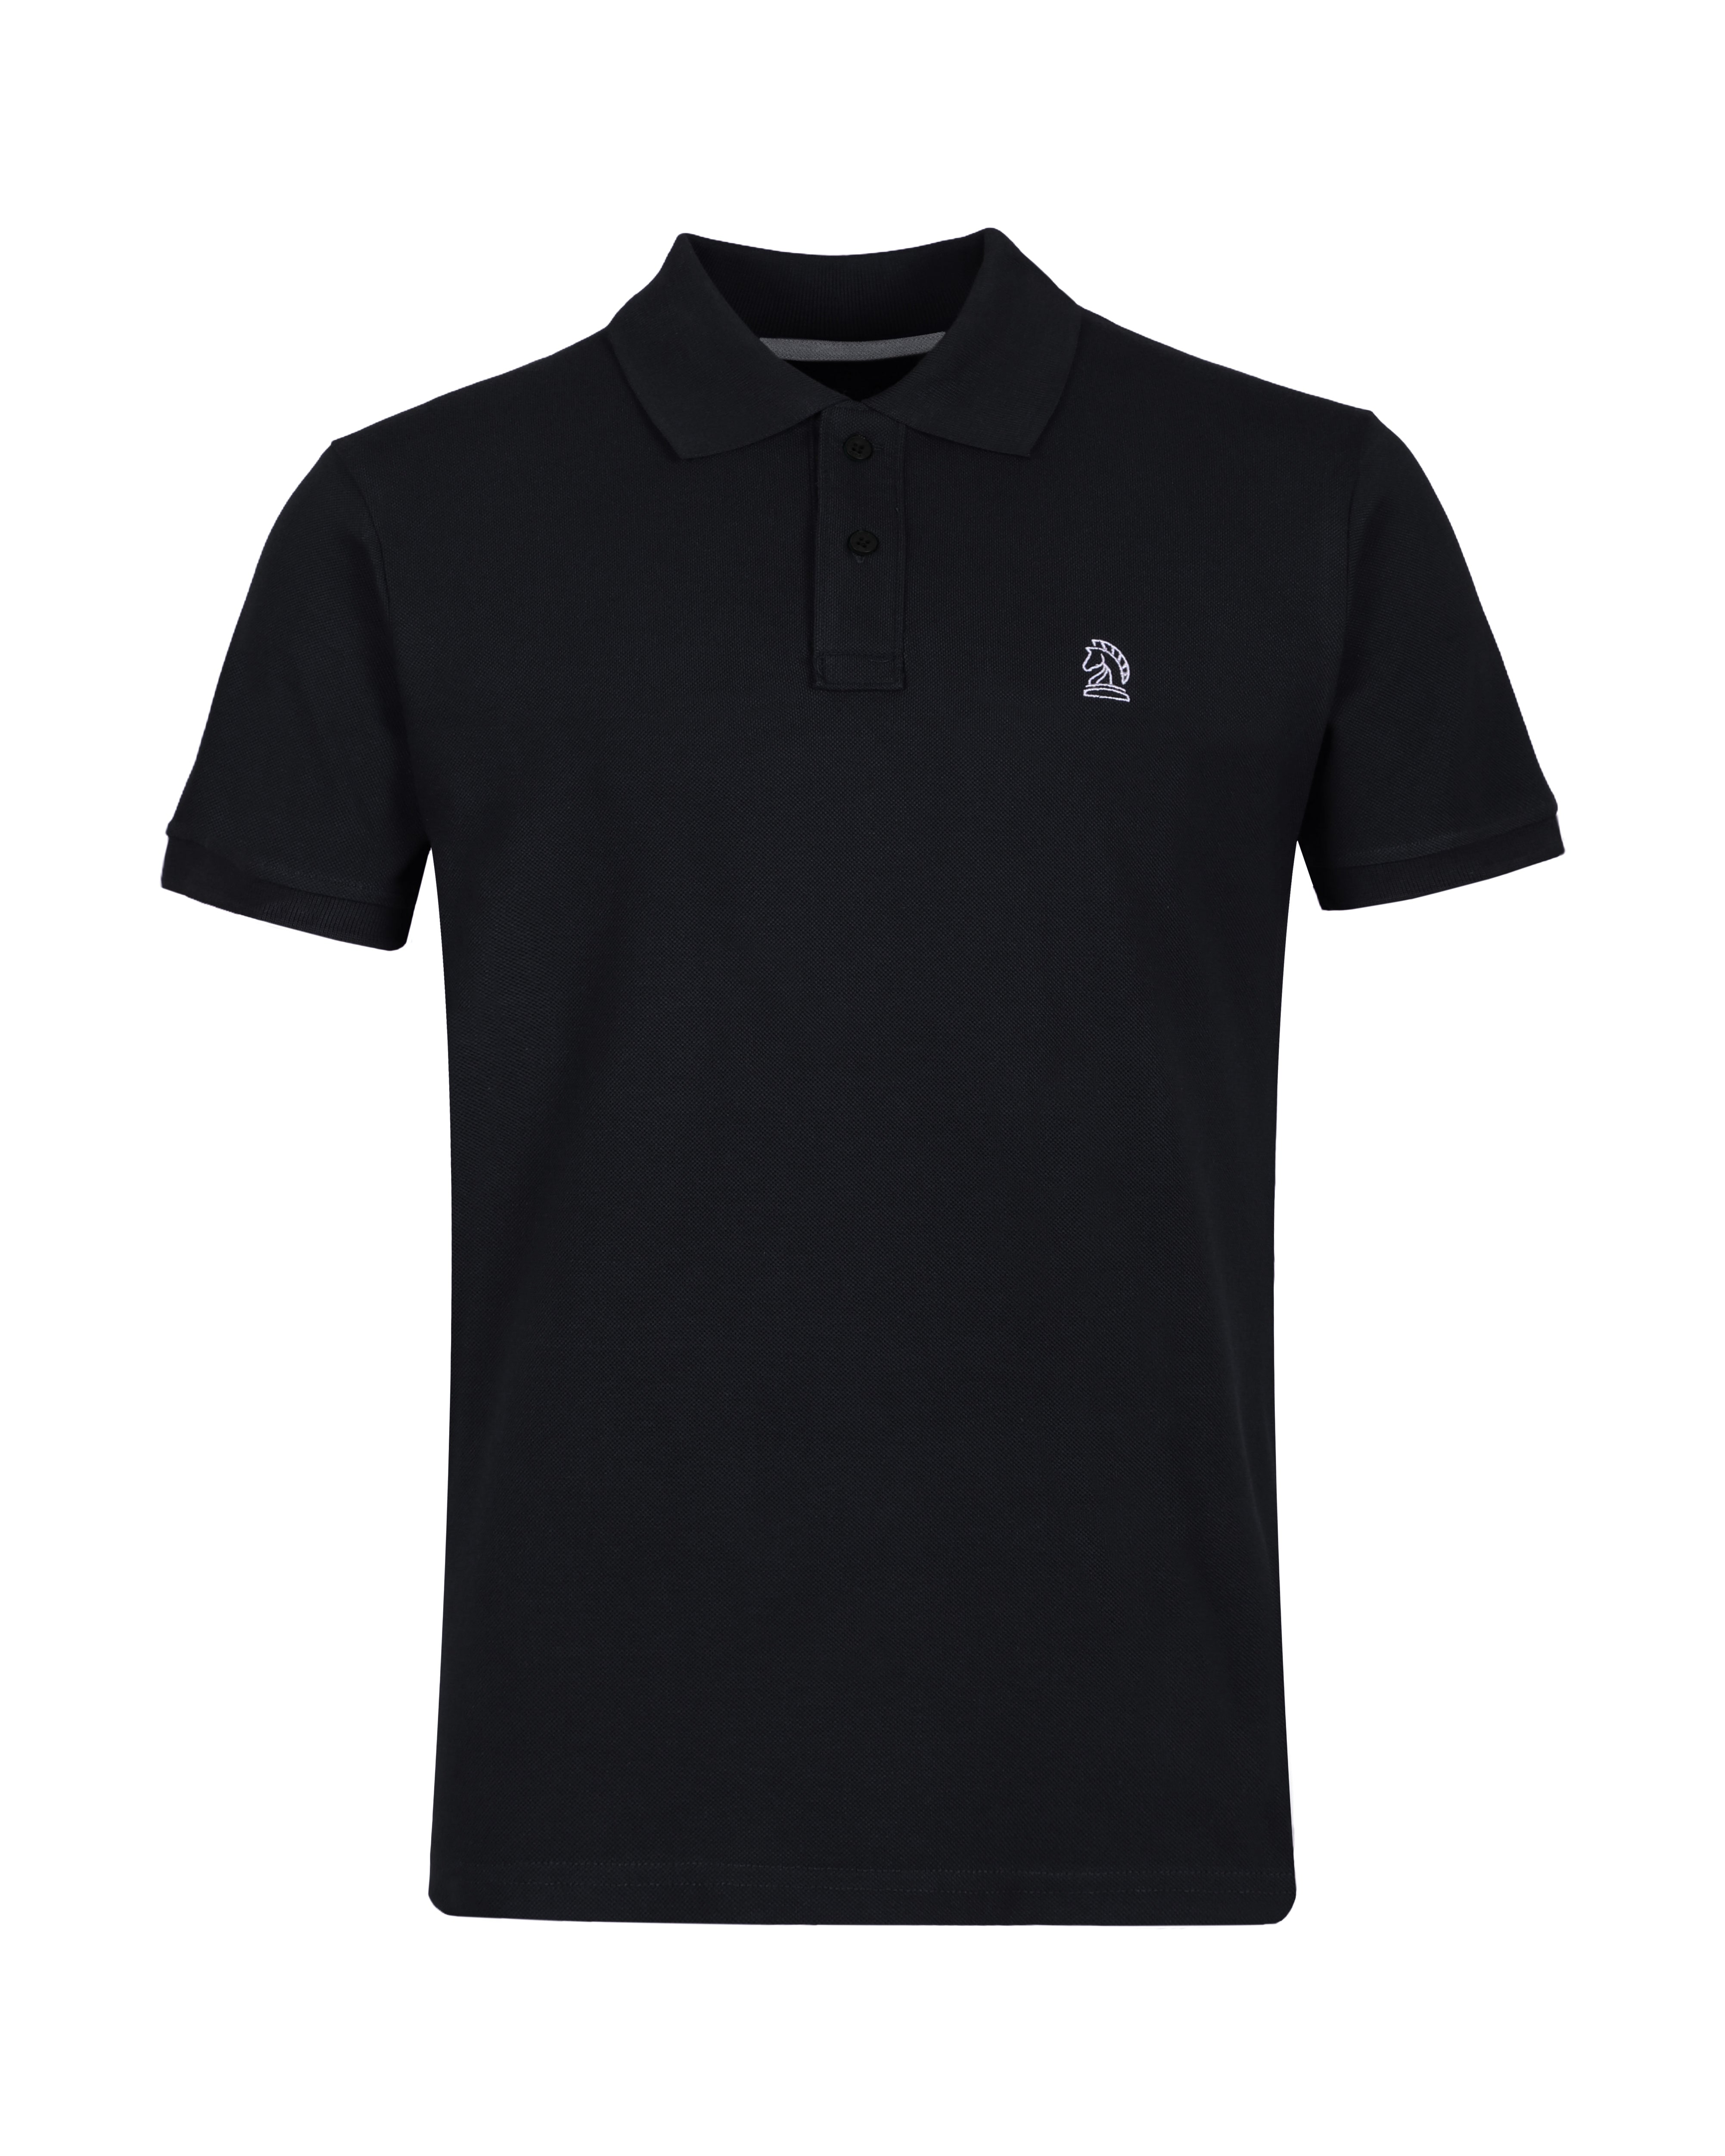 Black Color Premium Cotton T-Shirt